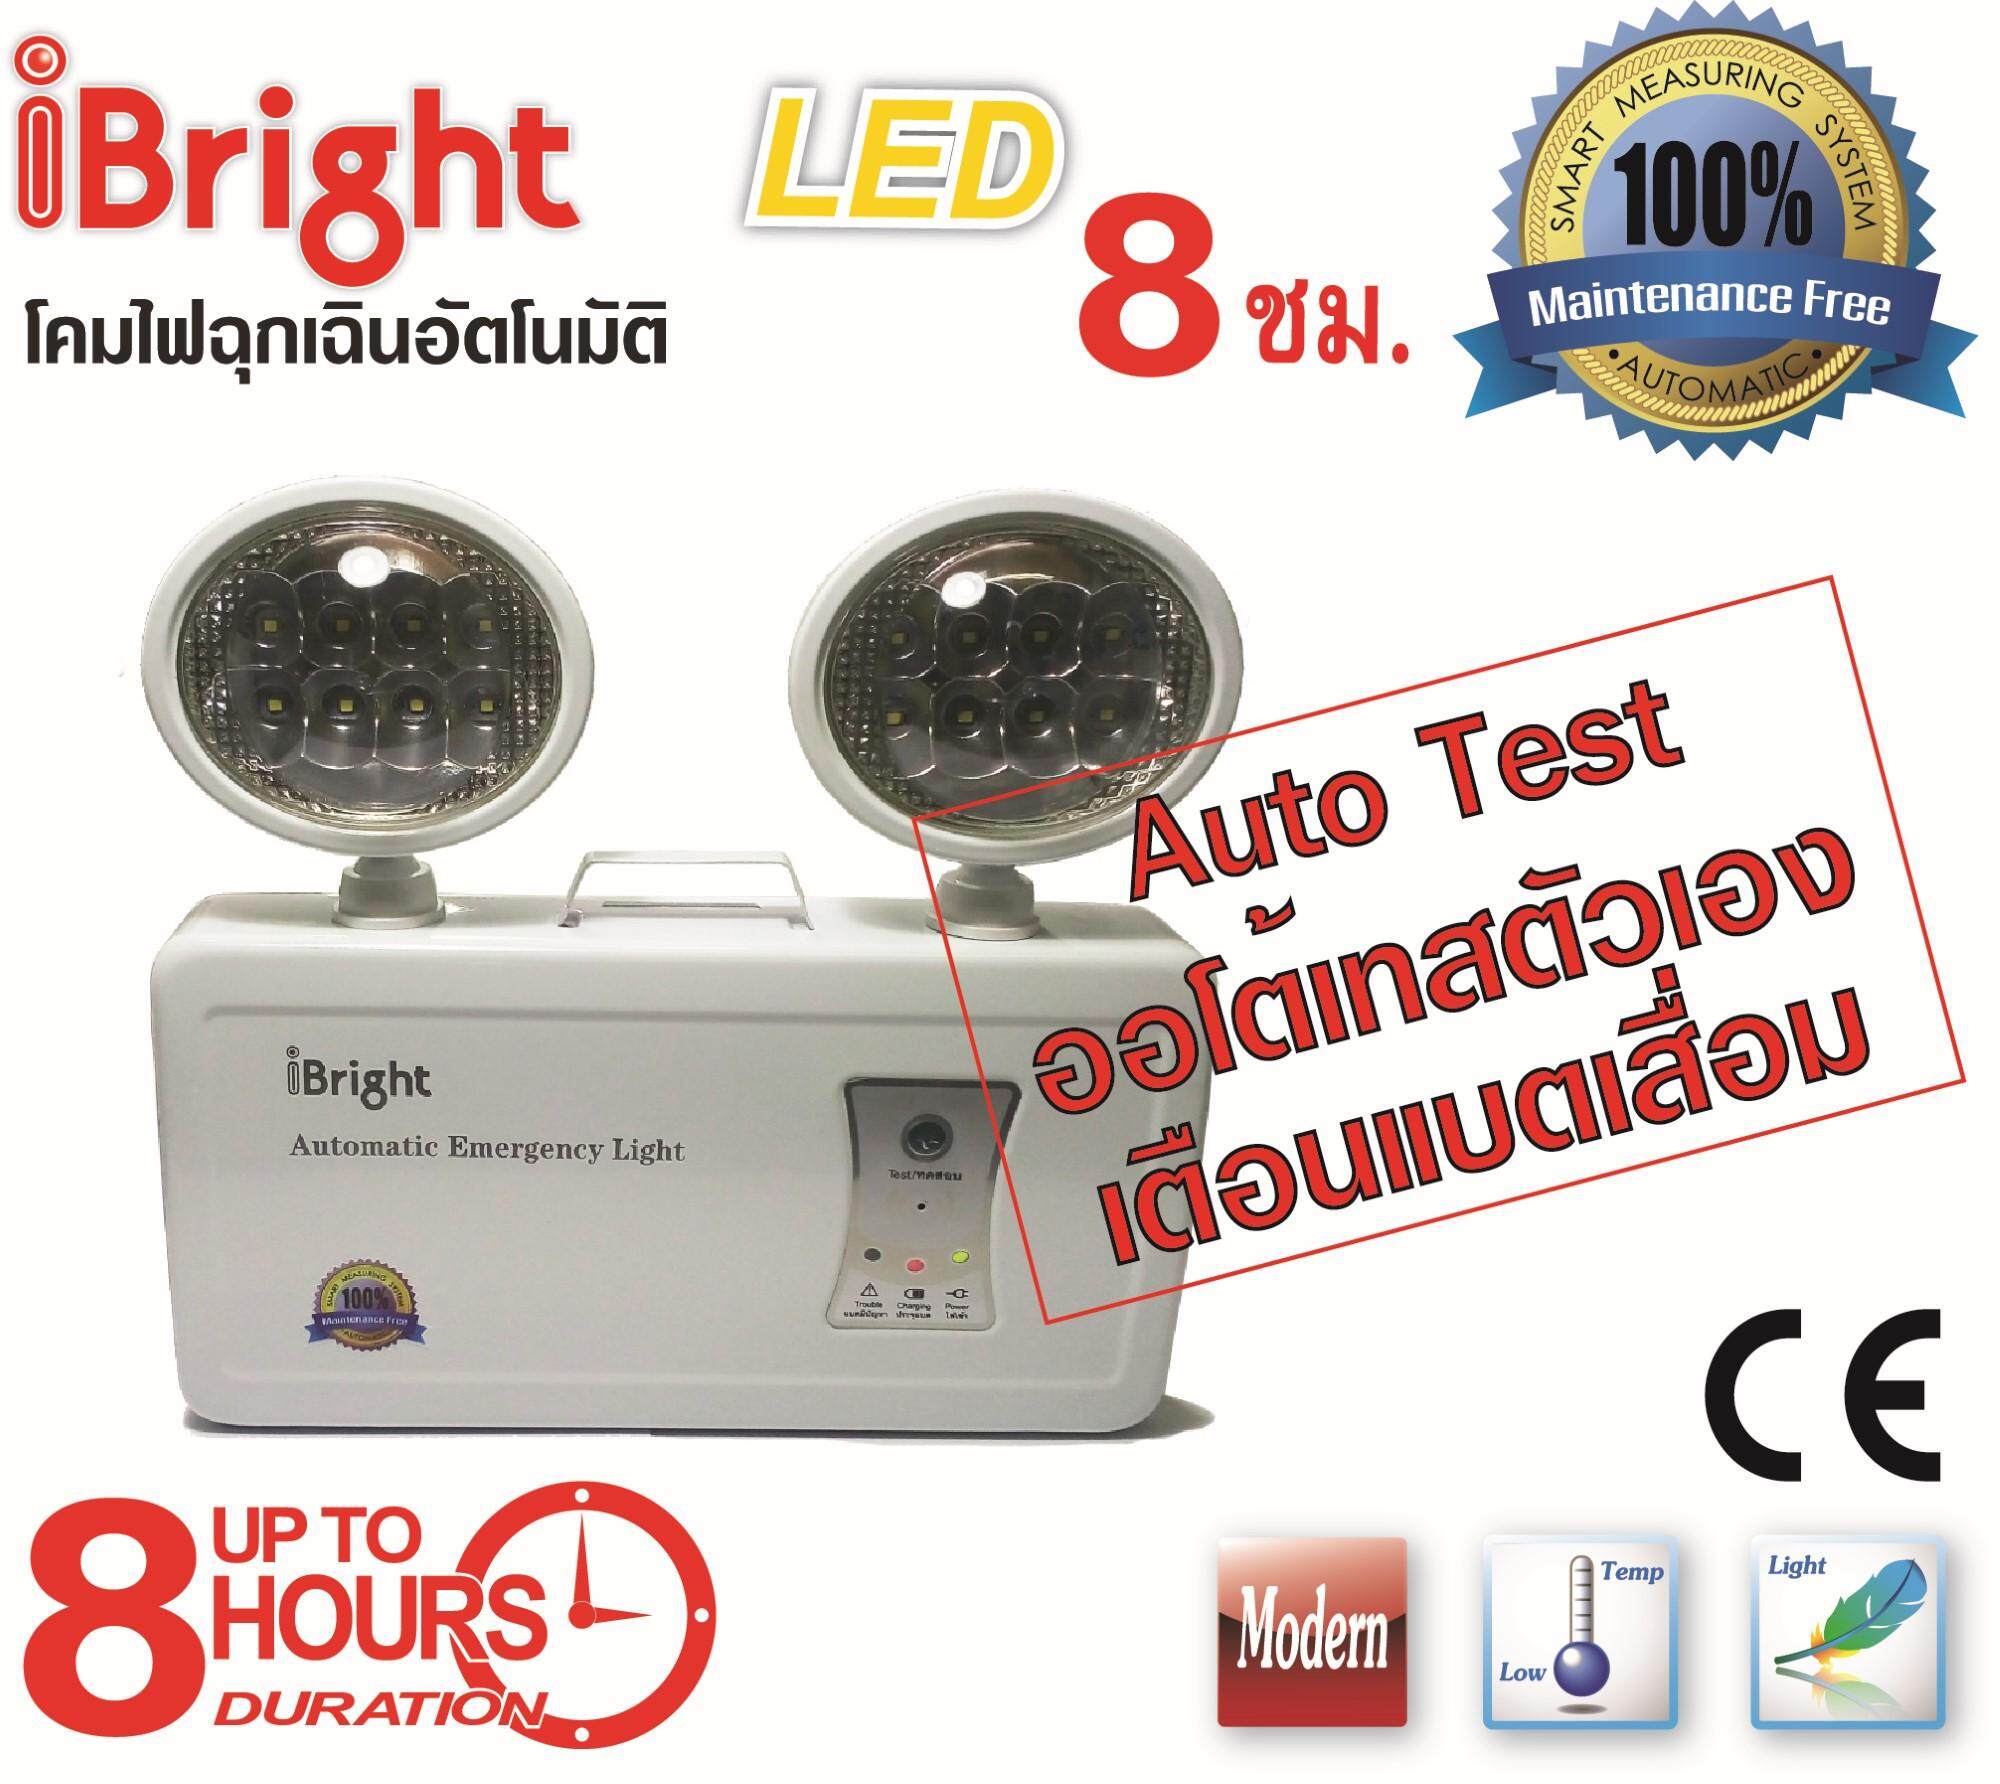 ไฟฉุกเฉิน ไฟสำรอง อัตโนมัติ LED iBright Automatic Emergency Light EM054